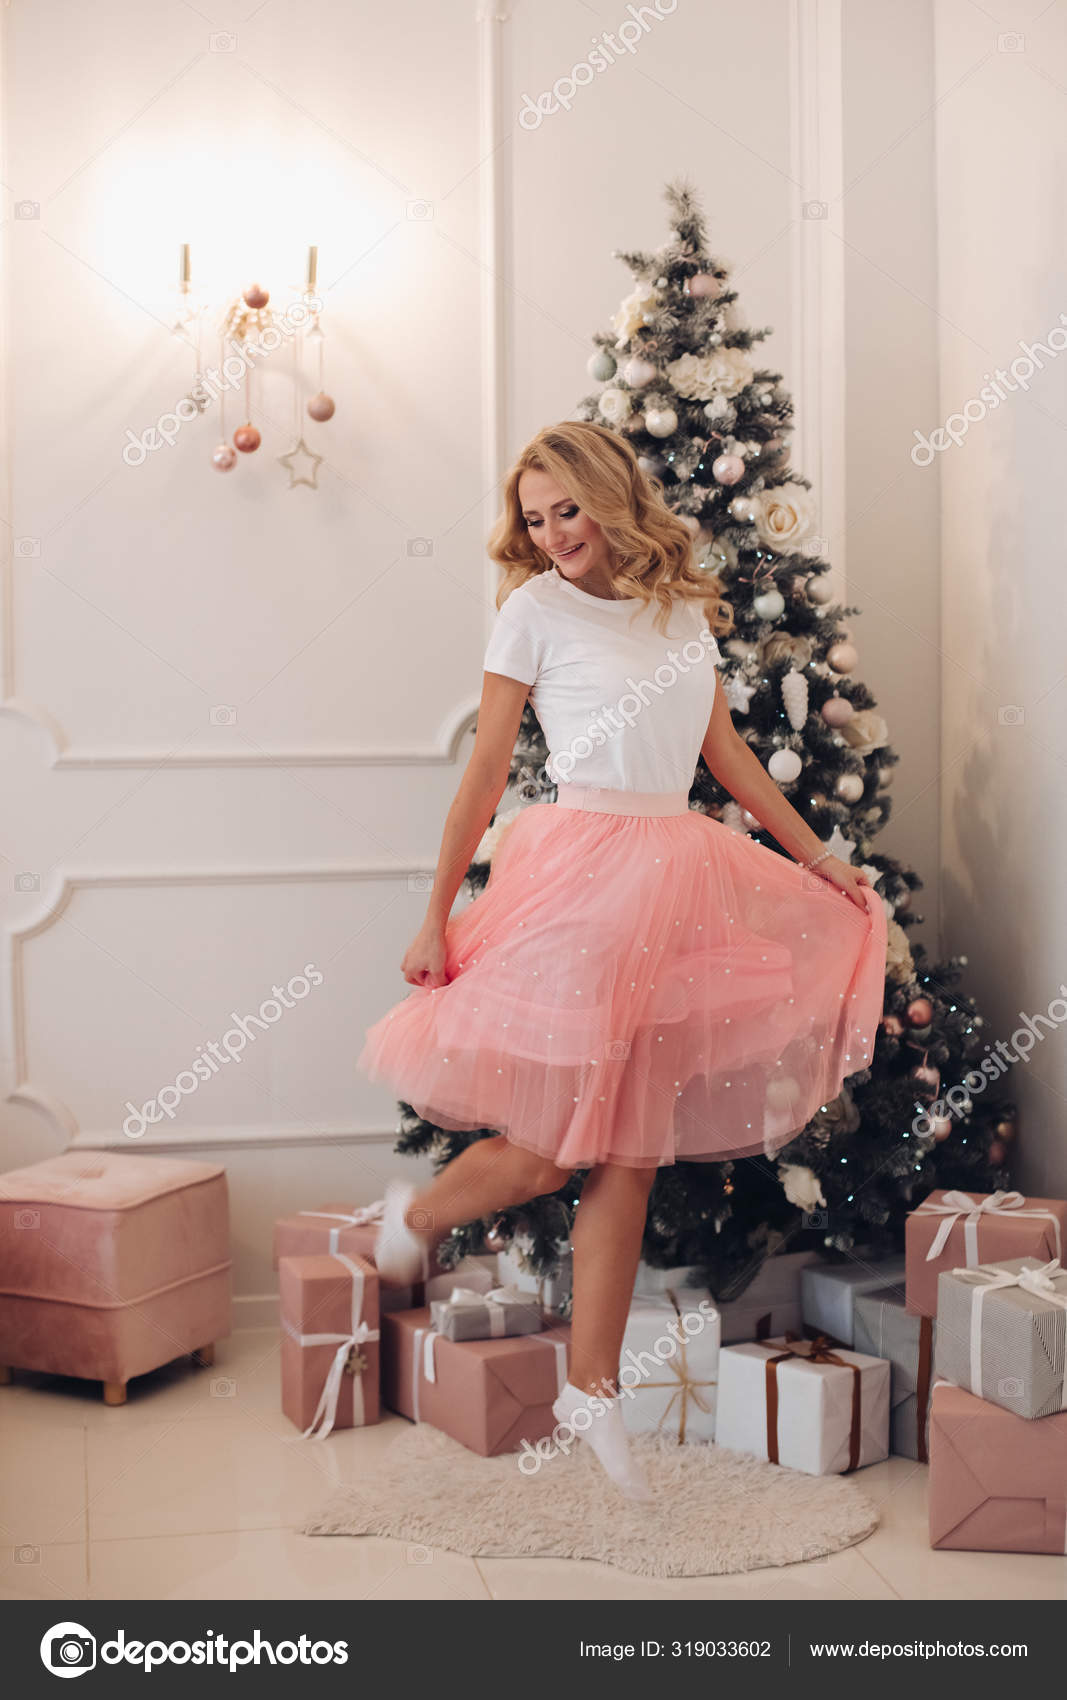 Vakker kvinne i rosa skjørt ved juletreet . – stockfoto © studioluckyaa  #319033602